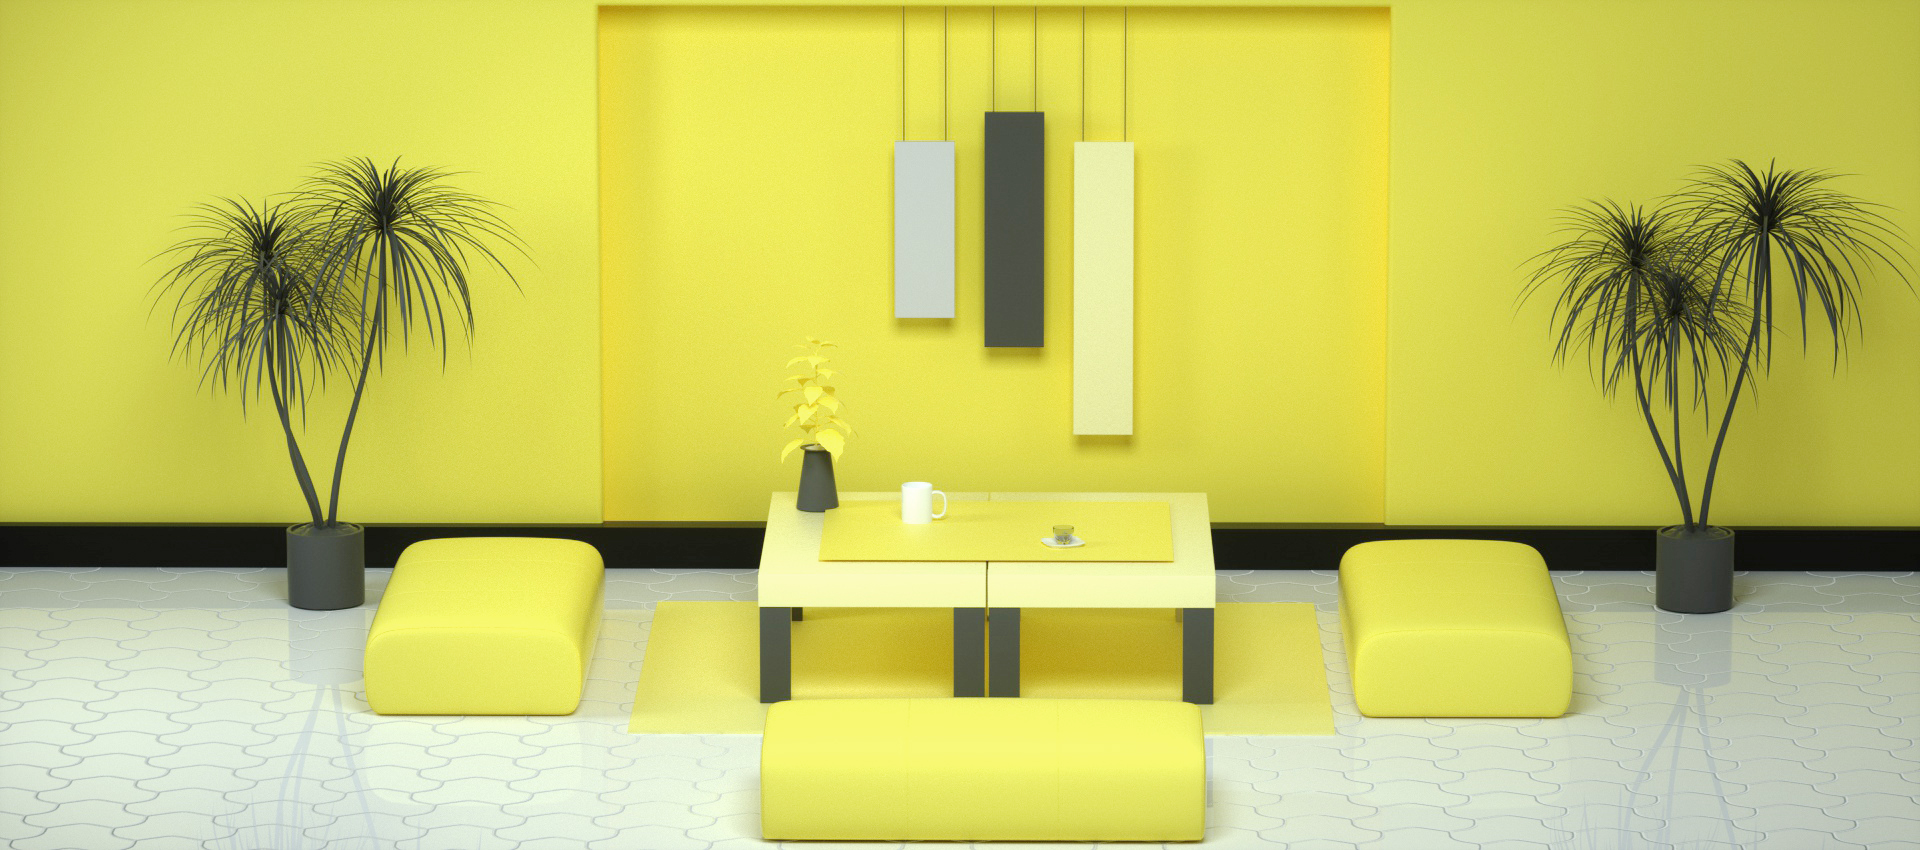 C4D模型柠檬黄色3D立体空间场景C4D模型柠檬黄色3D立体空间场景.jpg